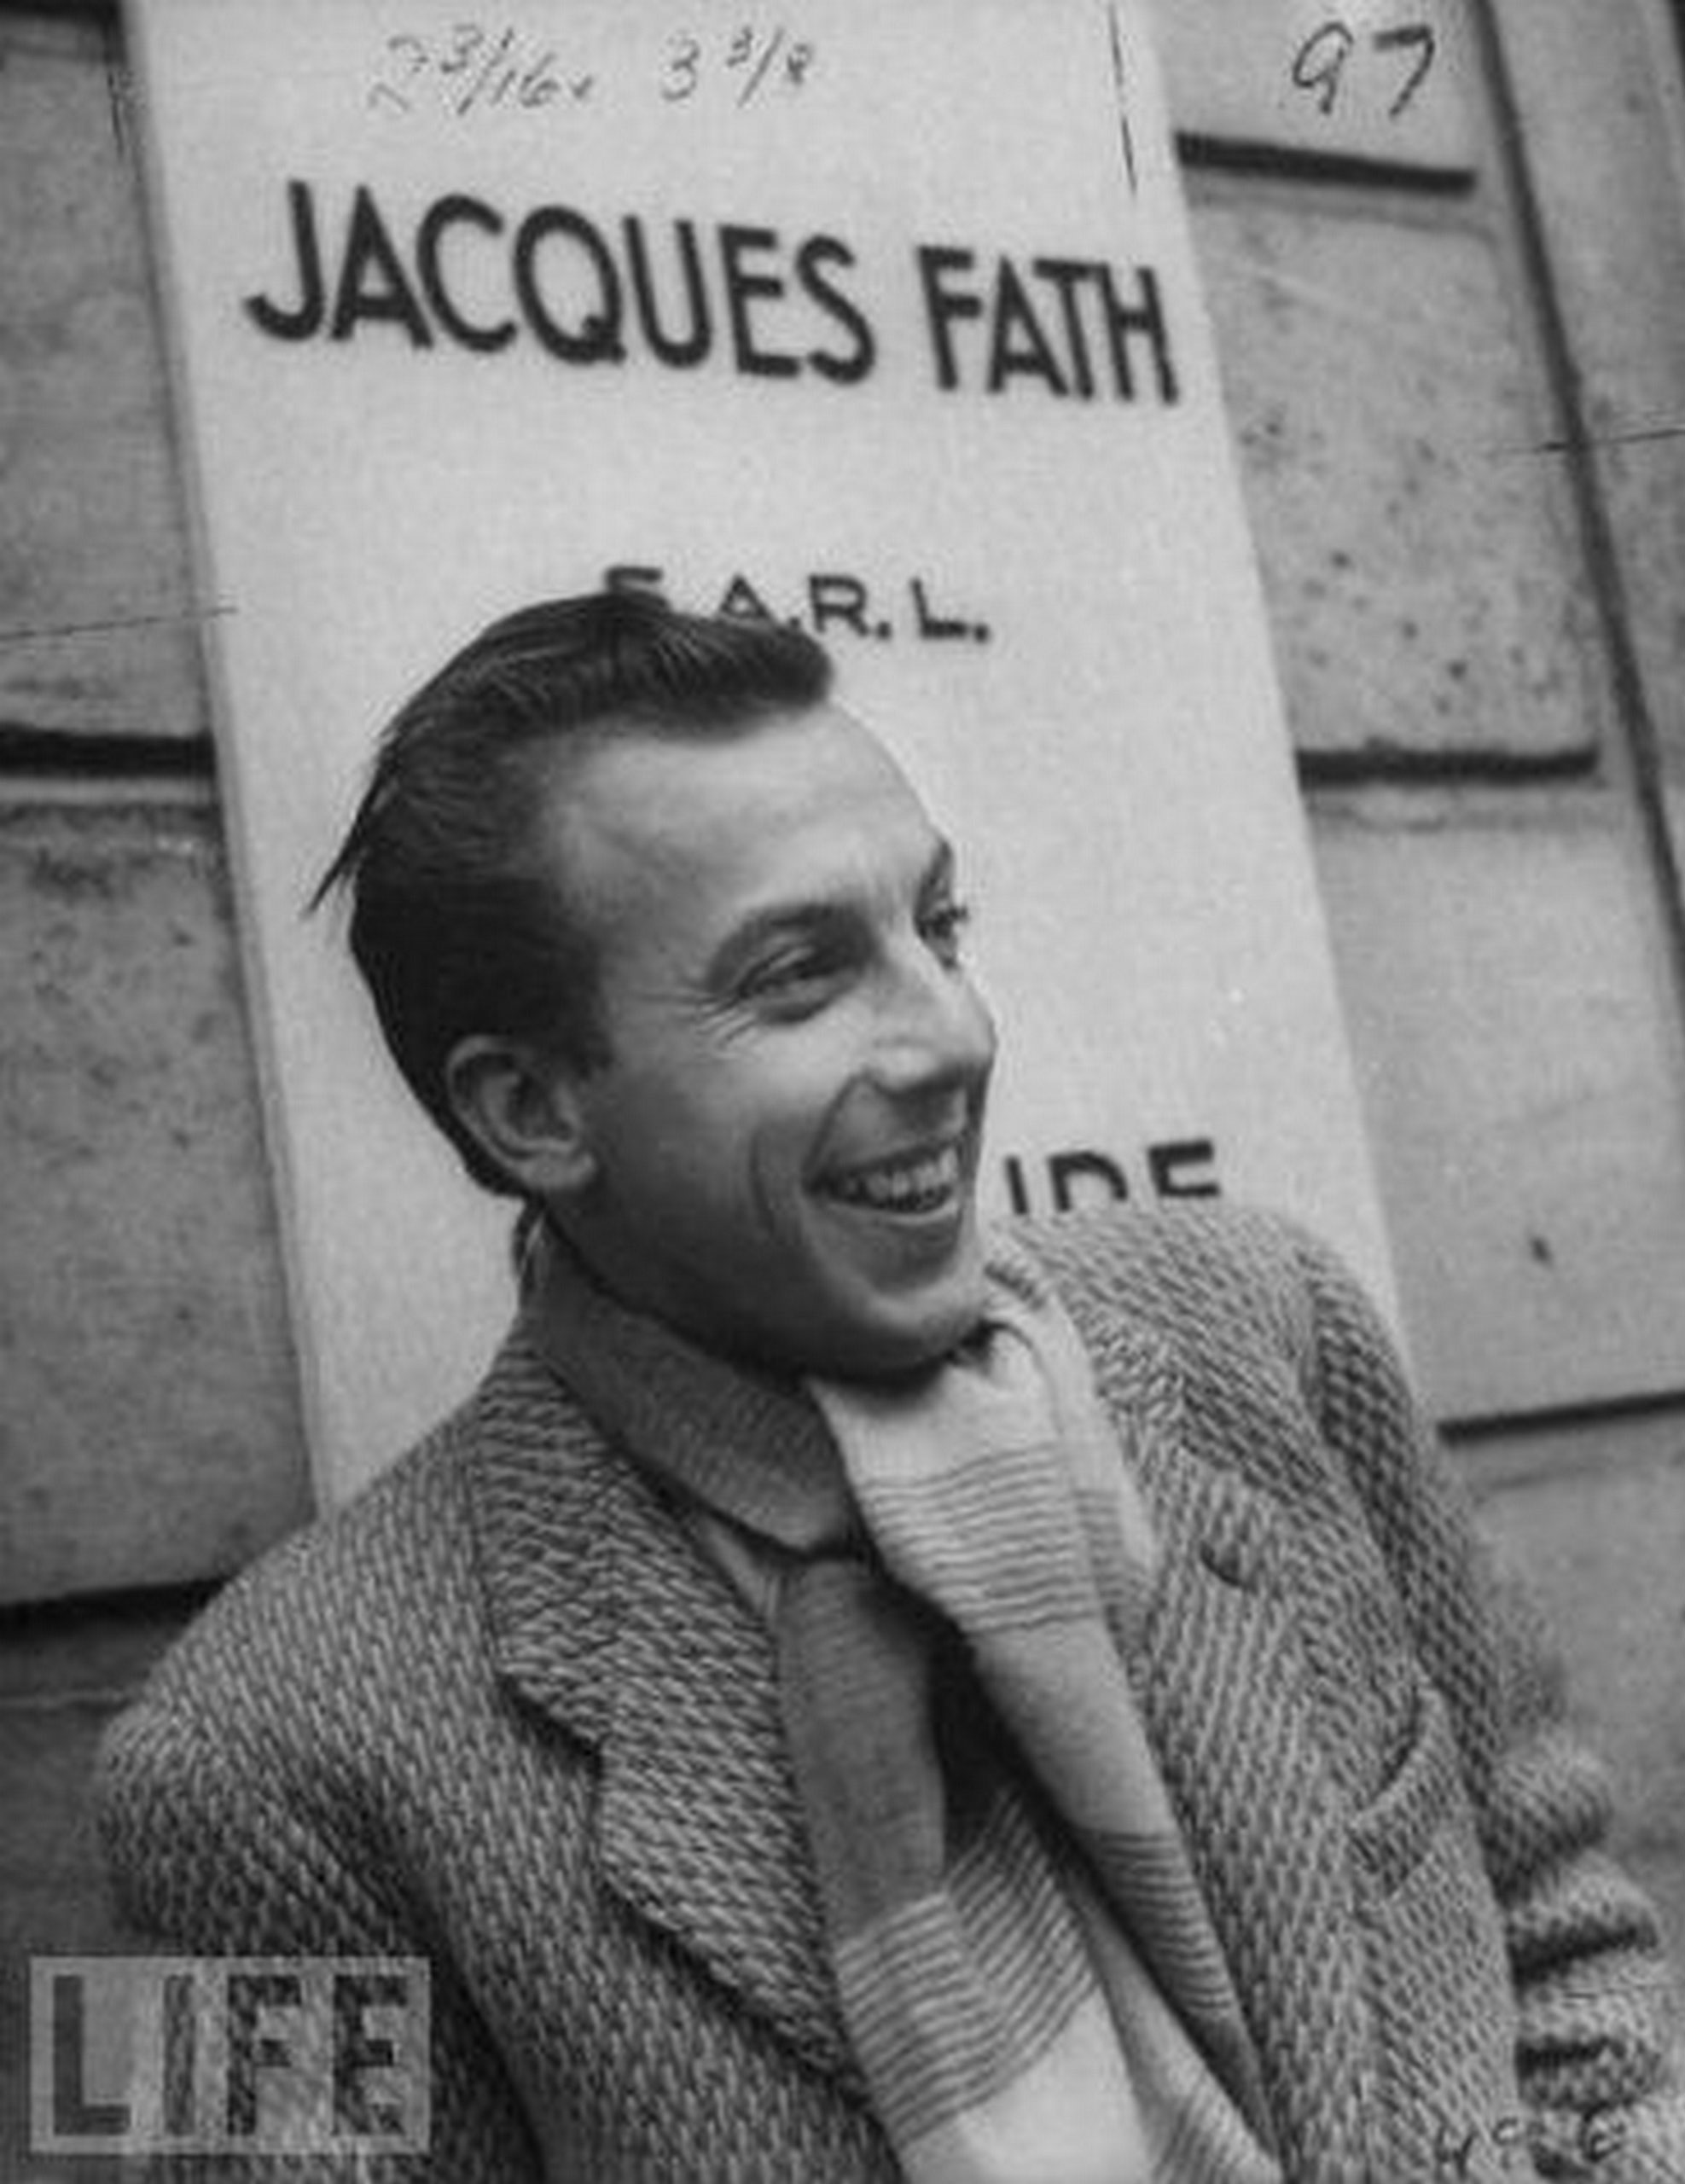 Jacques Fath devant l’entrée de sa maison de couture, avenue Pierre 1er de Serbie, Paris 8e (Life, 1952). Rival de Dior et Balmain, autodidacte revendiqué, Fath développa sa maison de couture pendant l’Occupation, faisant d’elle une entreprise prospère (voir aussi pastille 11). Son style audacieux, joyeux et emblématique du « chic parisien » le rendit célèbre après-guerre, jusqu’à sa mort prématurée d’une leucémie à l’âge de 43 ans, en 1954.<br><br>